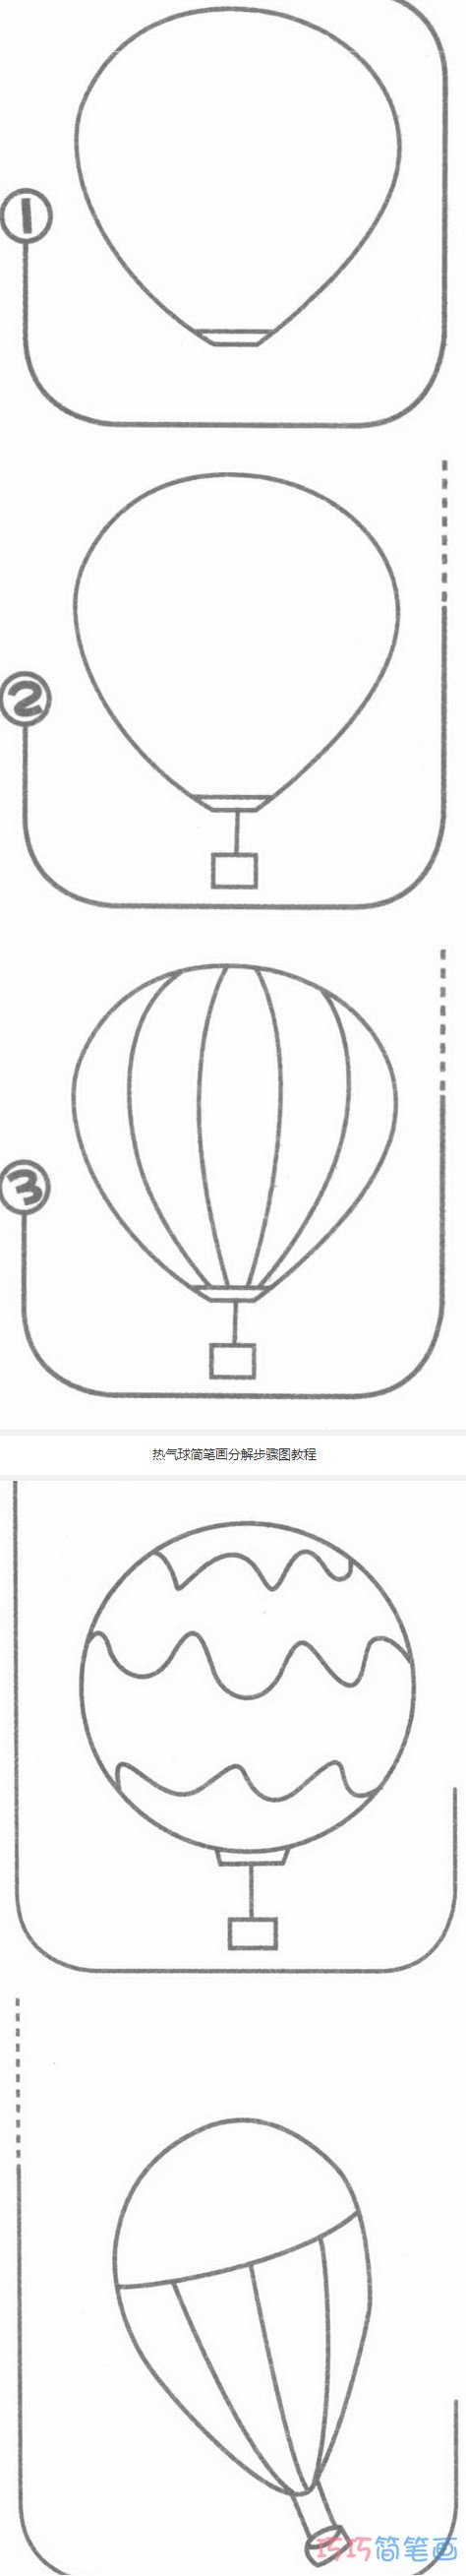 热气球怎么画简洁好画_带步骤图热气球简笔画图片